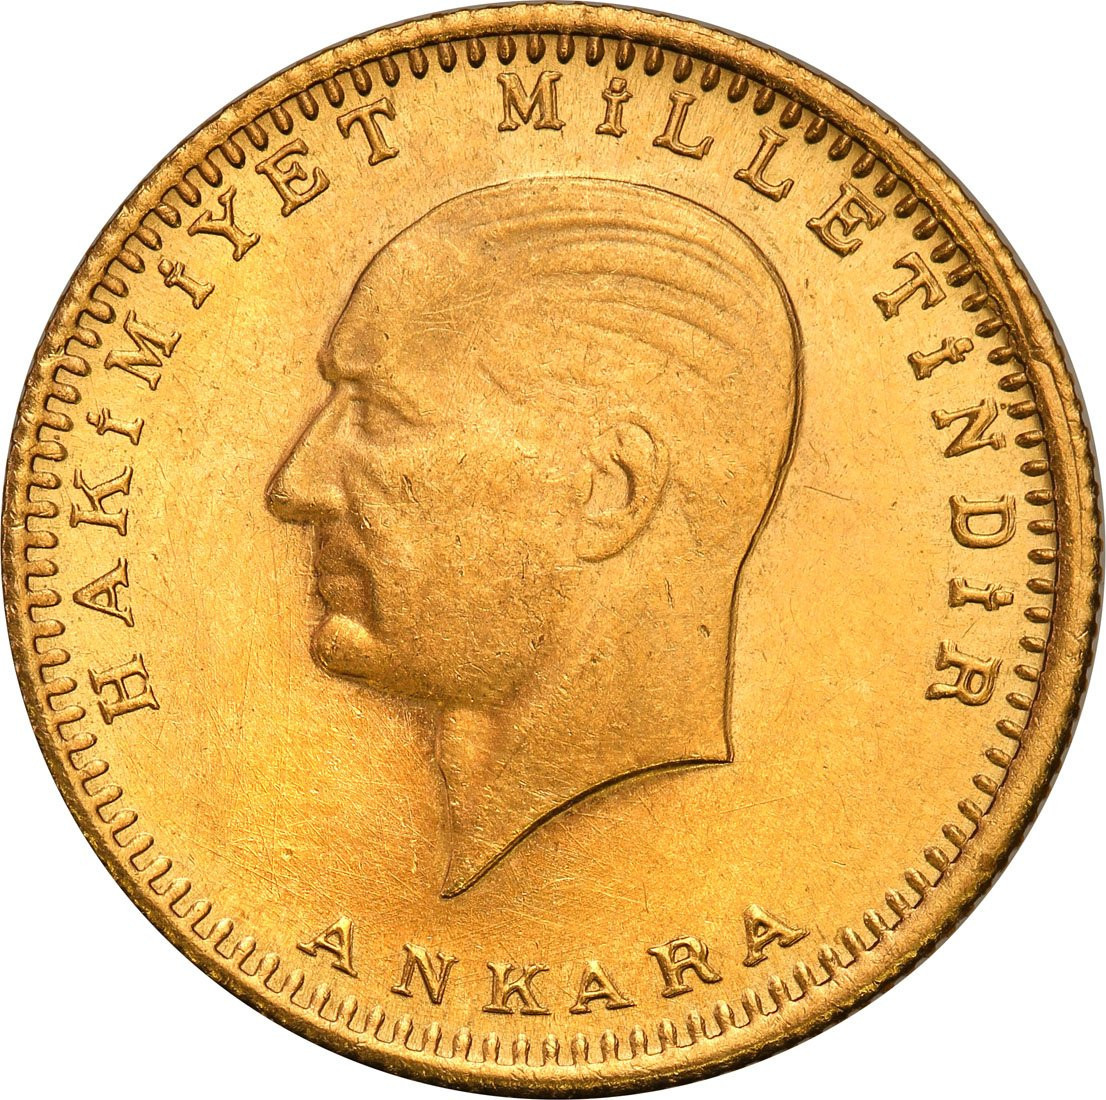 Turcja 100 piastrów 1958 (1923 + 35)